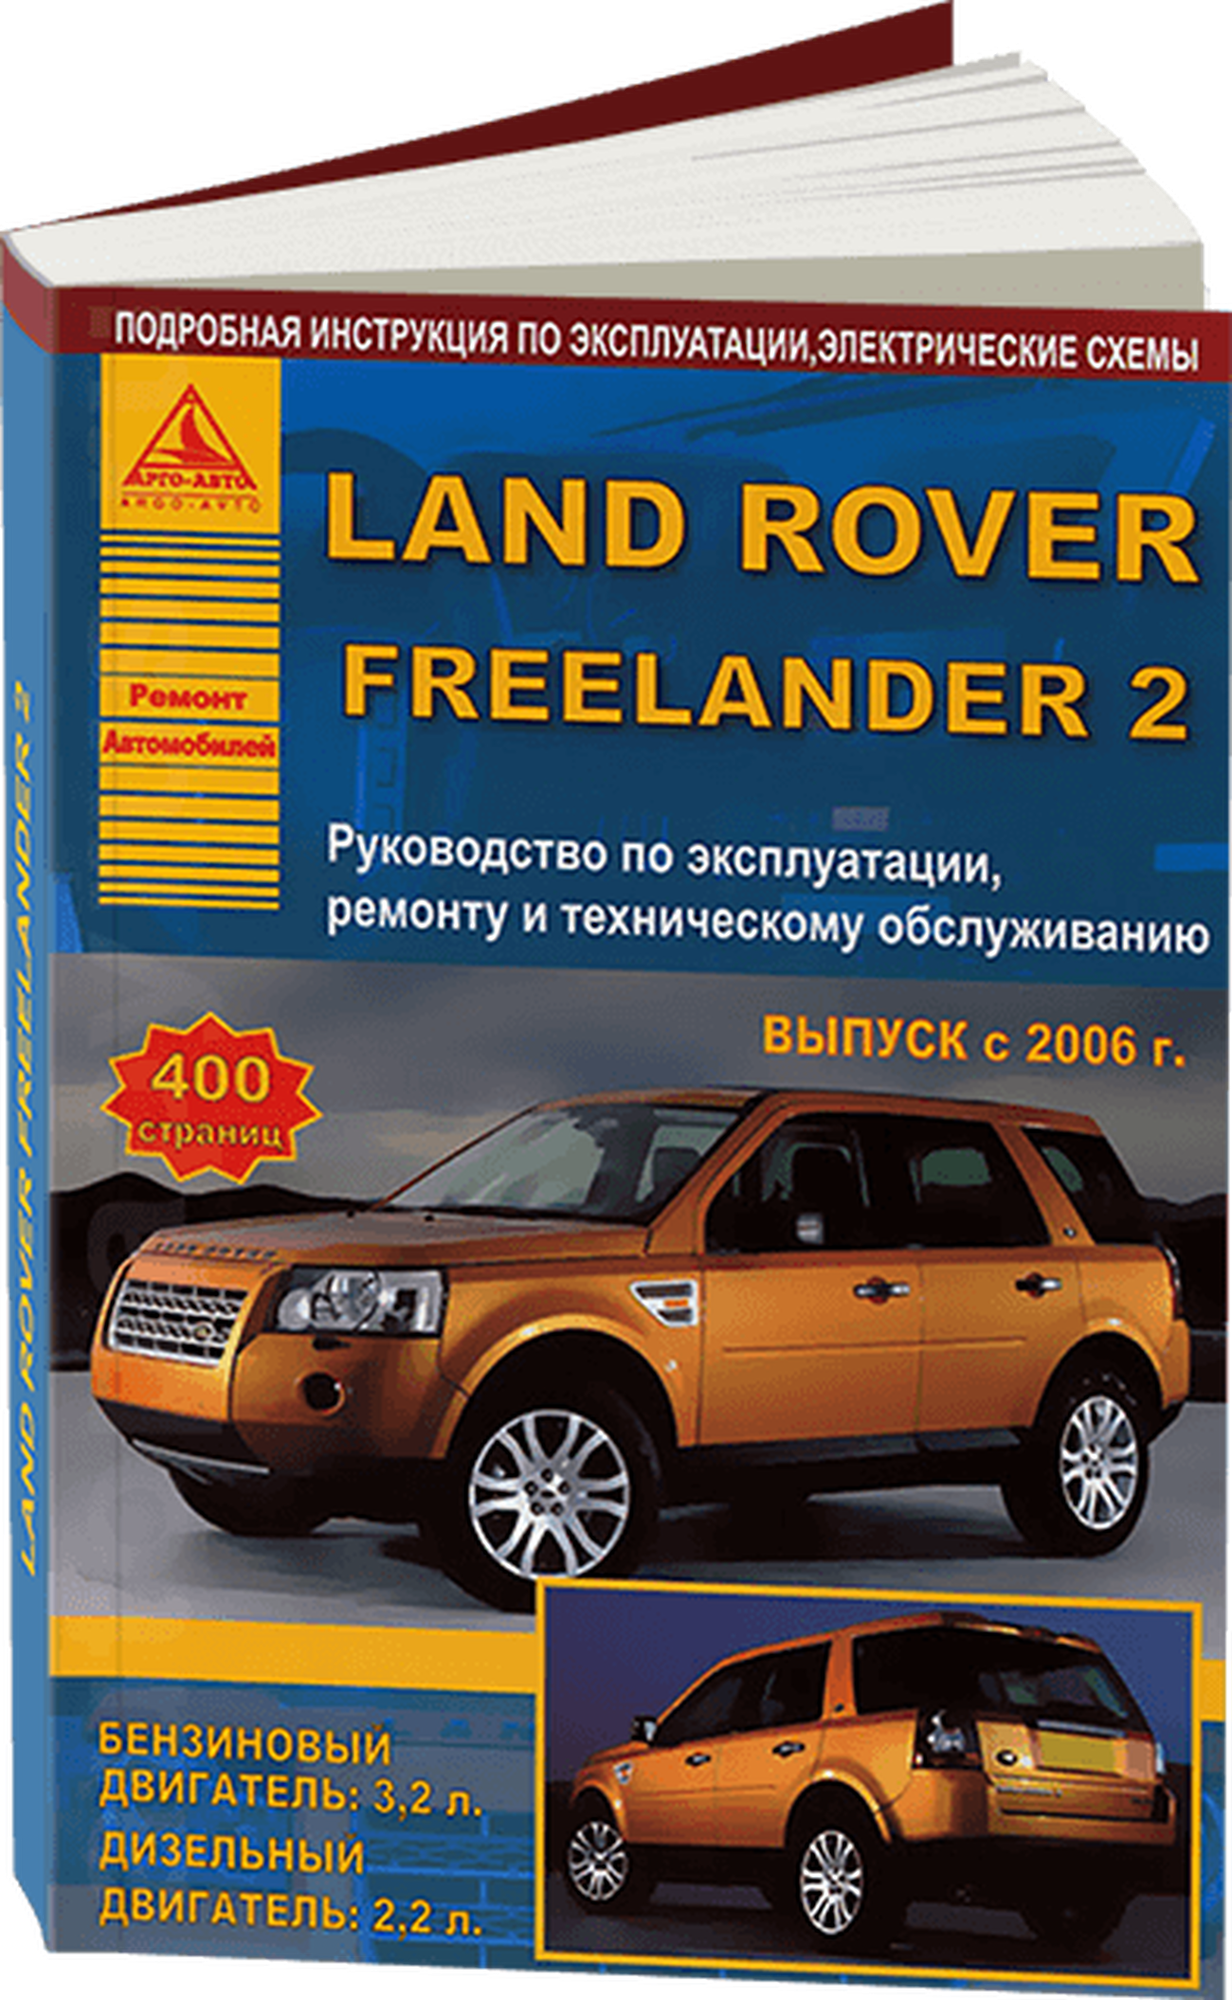 Автокнига: руководство / инструкция по ремонту и эксплуатации LAND ROVER FREELANDER 2 (лэнд ровер фрилендер 2) бензин / дизель с 2006 года выпуска  978-5-8245-0149-0 издательство Арго-Авто